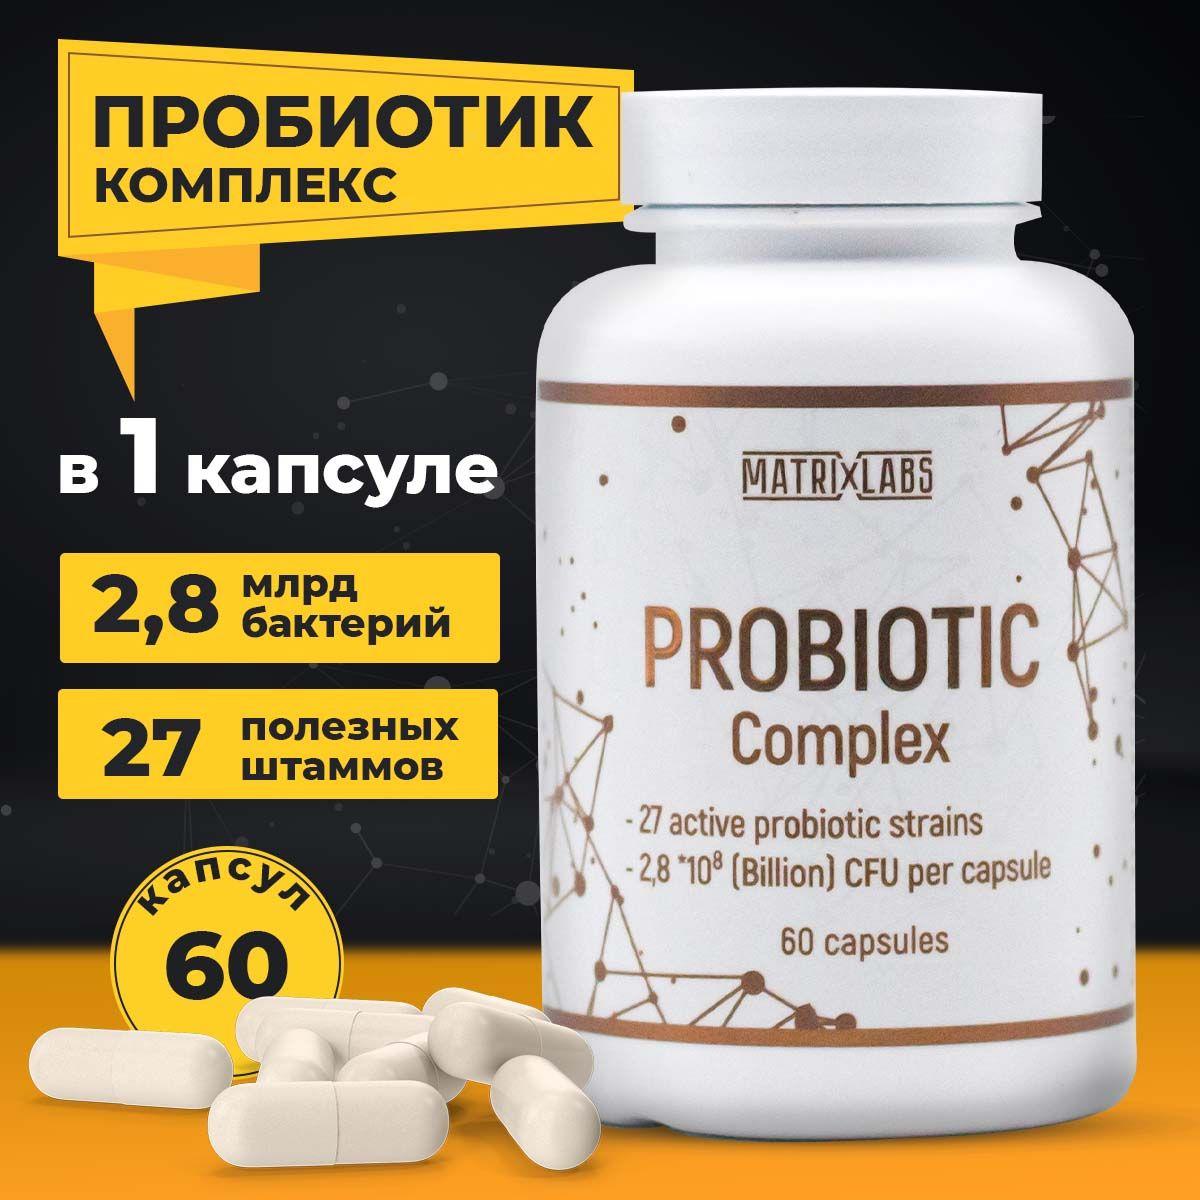 Пробиотики и пребиотики, комплекс, 60 капсул, Пробиофул, Matrix Labs, для нормализации работы пищеварения